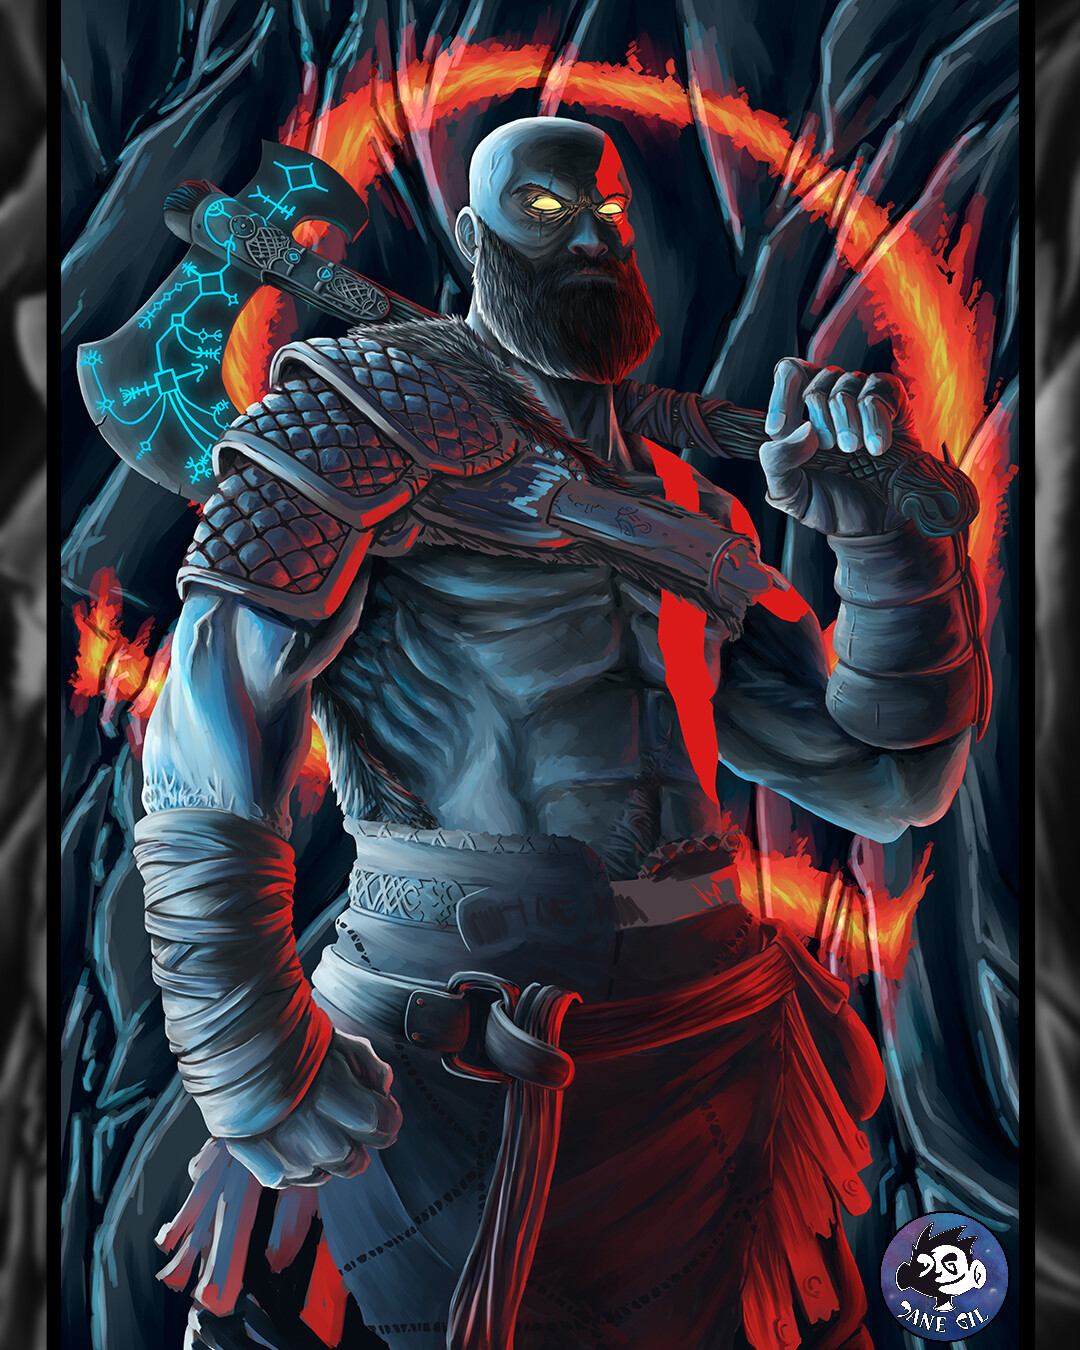 ArtStation - Kratos - God of war